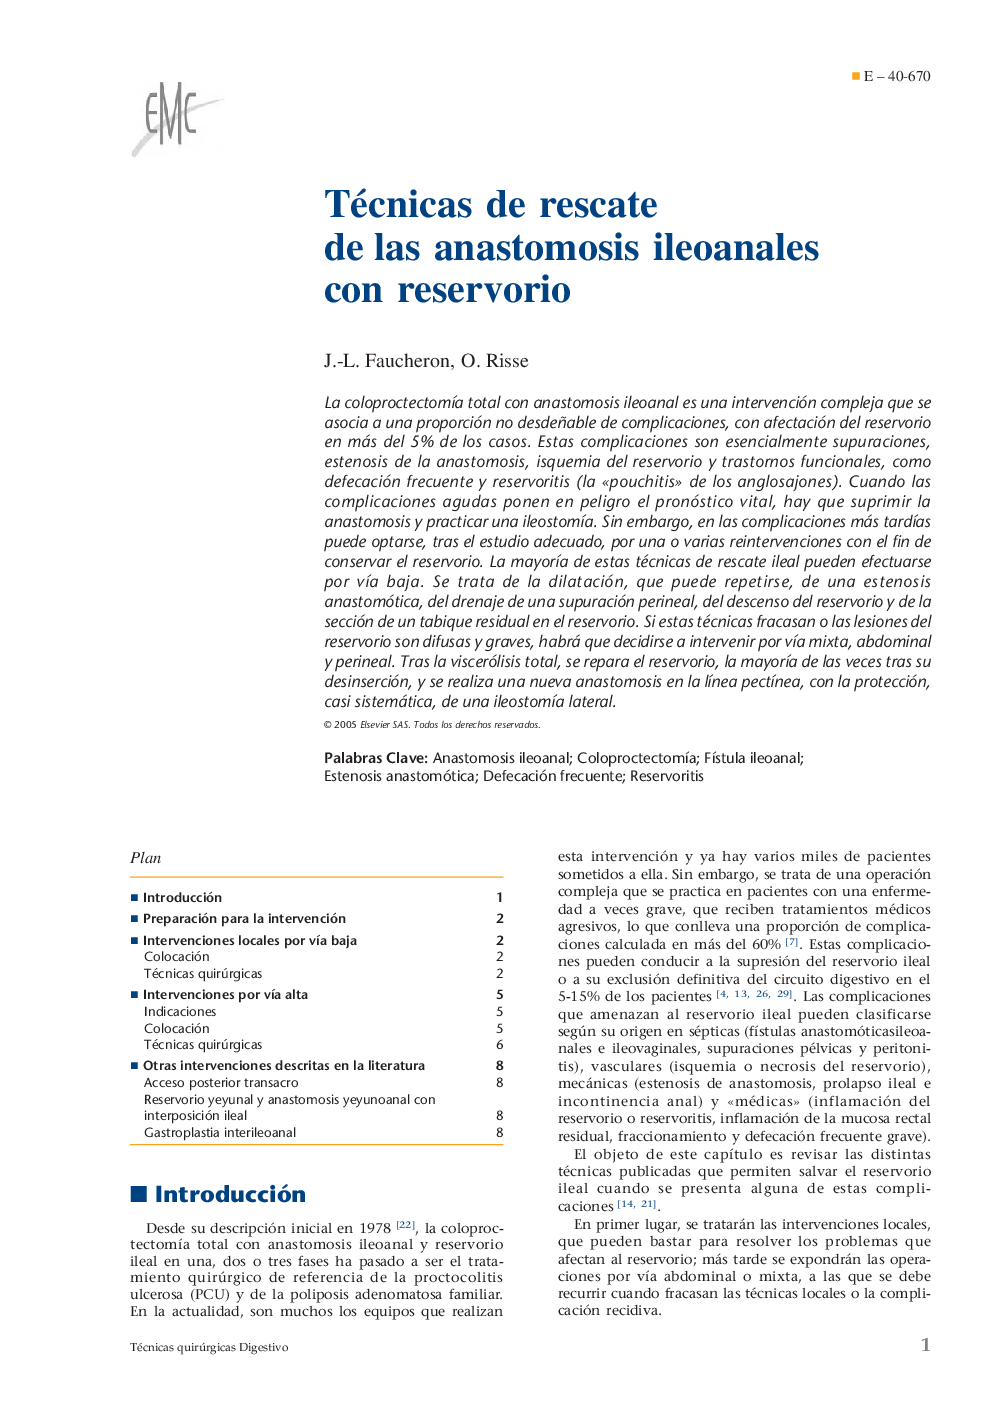 Técnicas de rescate de las anastomosis ileoanales con reservorio